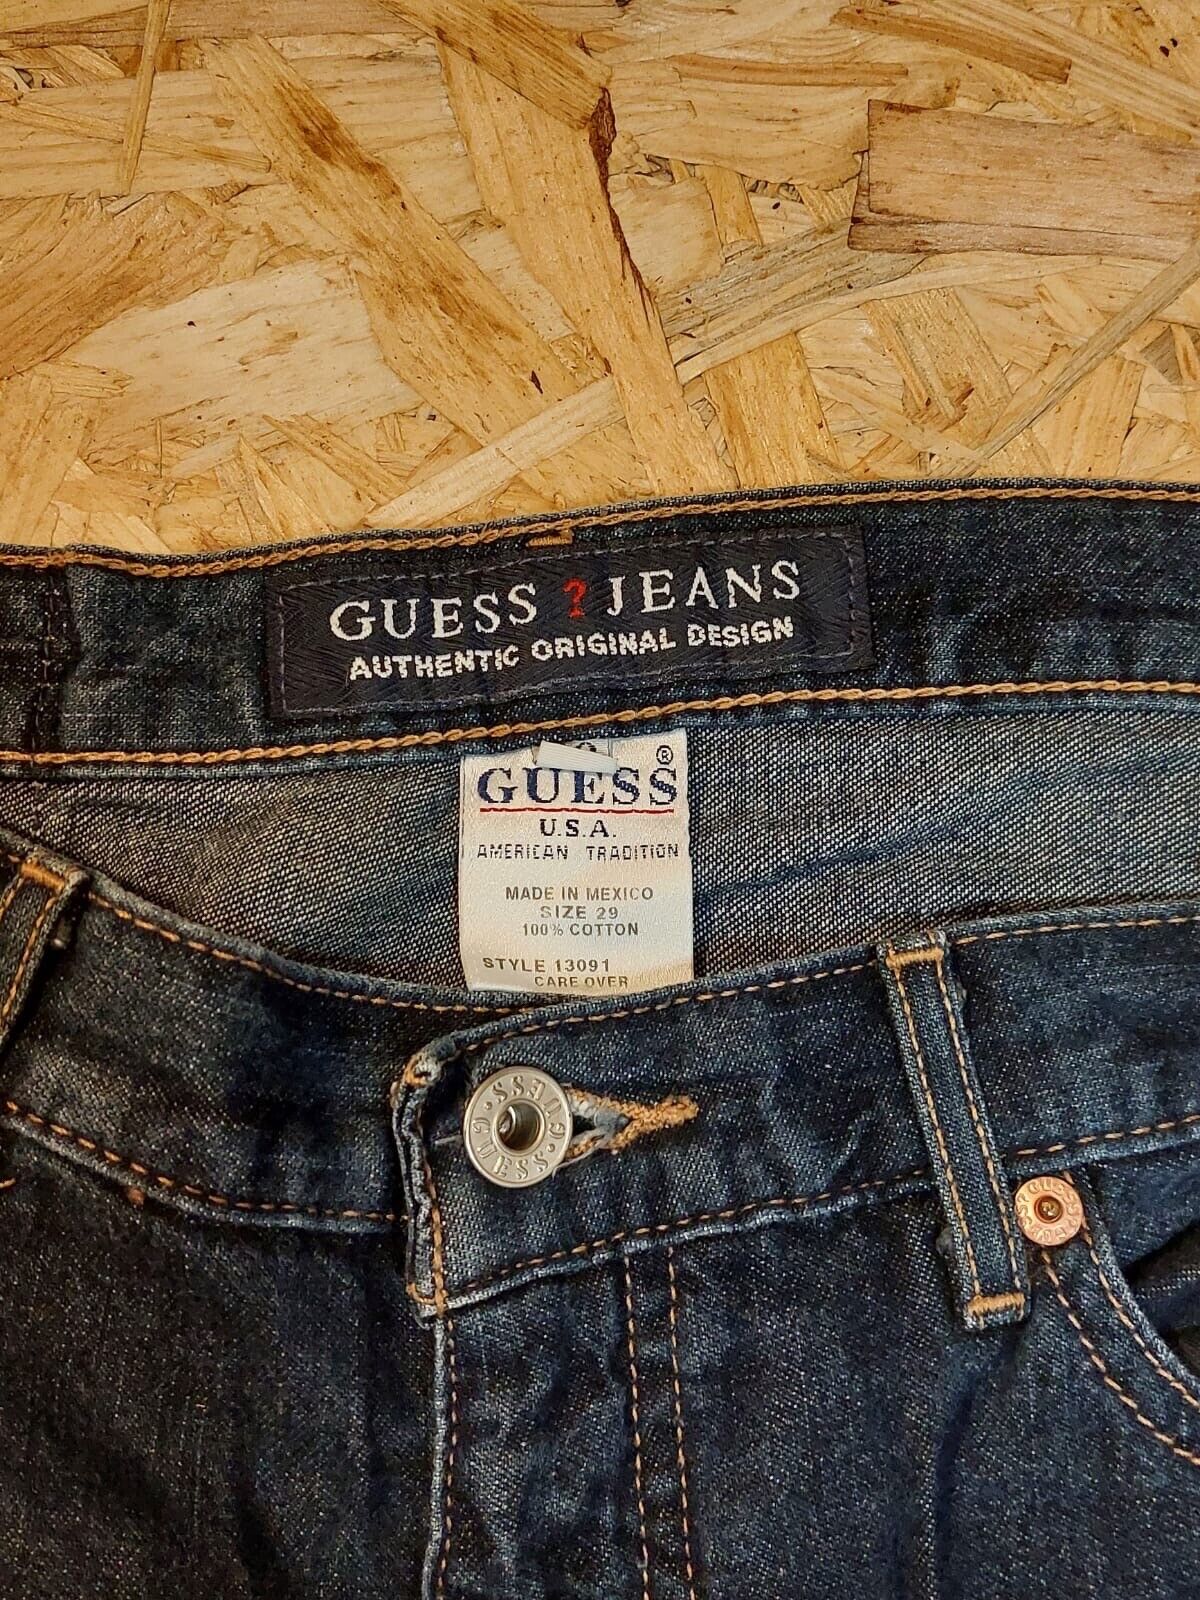 GUESS Jeans Capris W29 L25 Dark Blue 100% Cotton Style 13091 Cut 53597